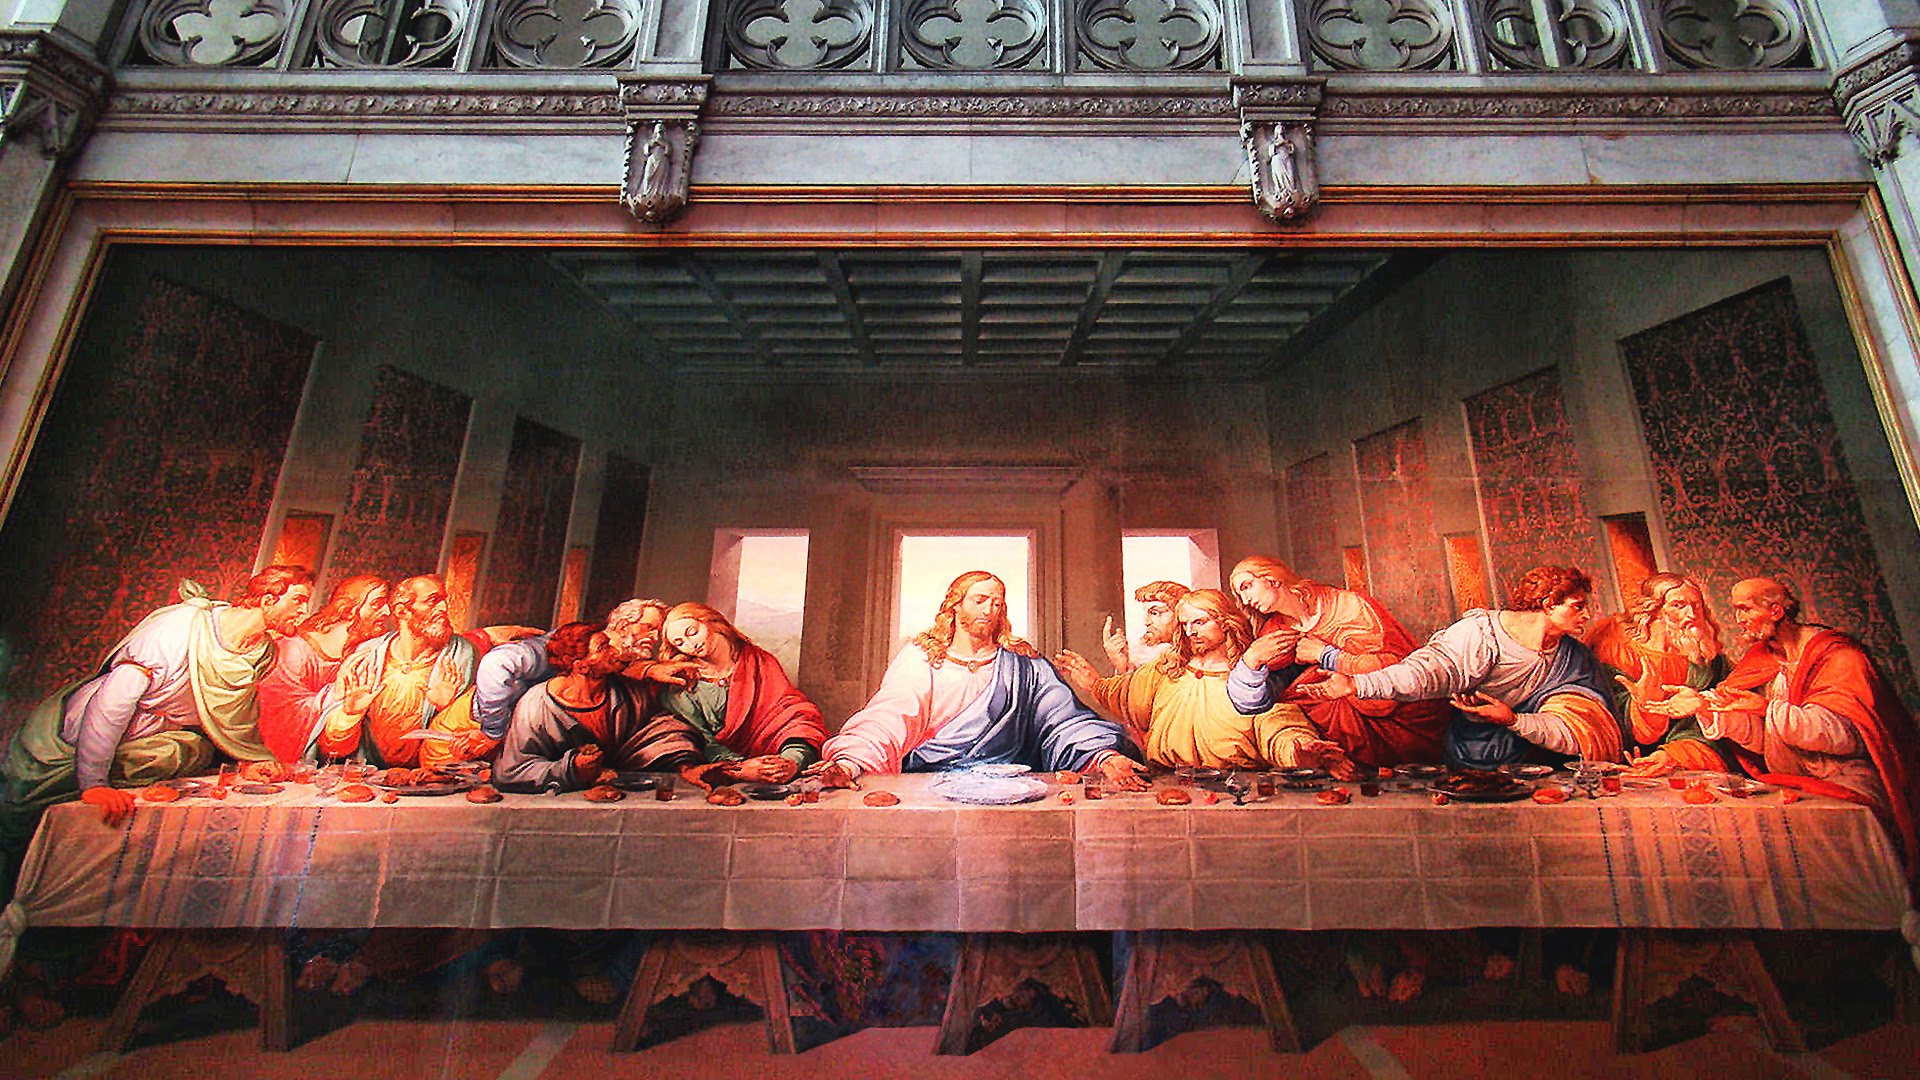 "La última cena" es una pintura mural original de Leonardo da Vinci ejecutada entre 1495 y 1498